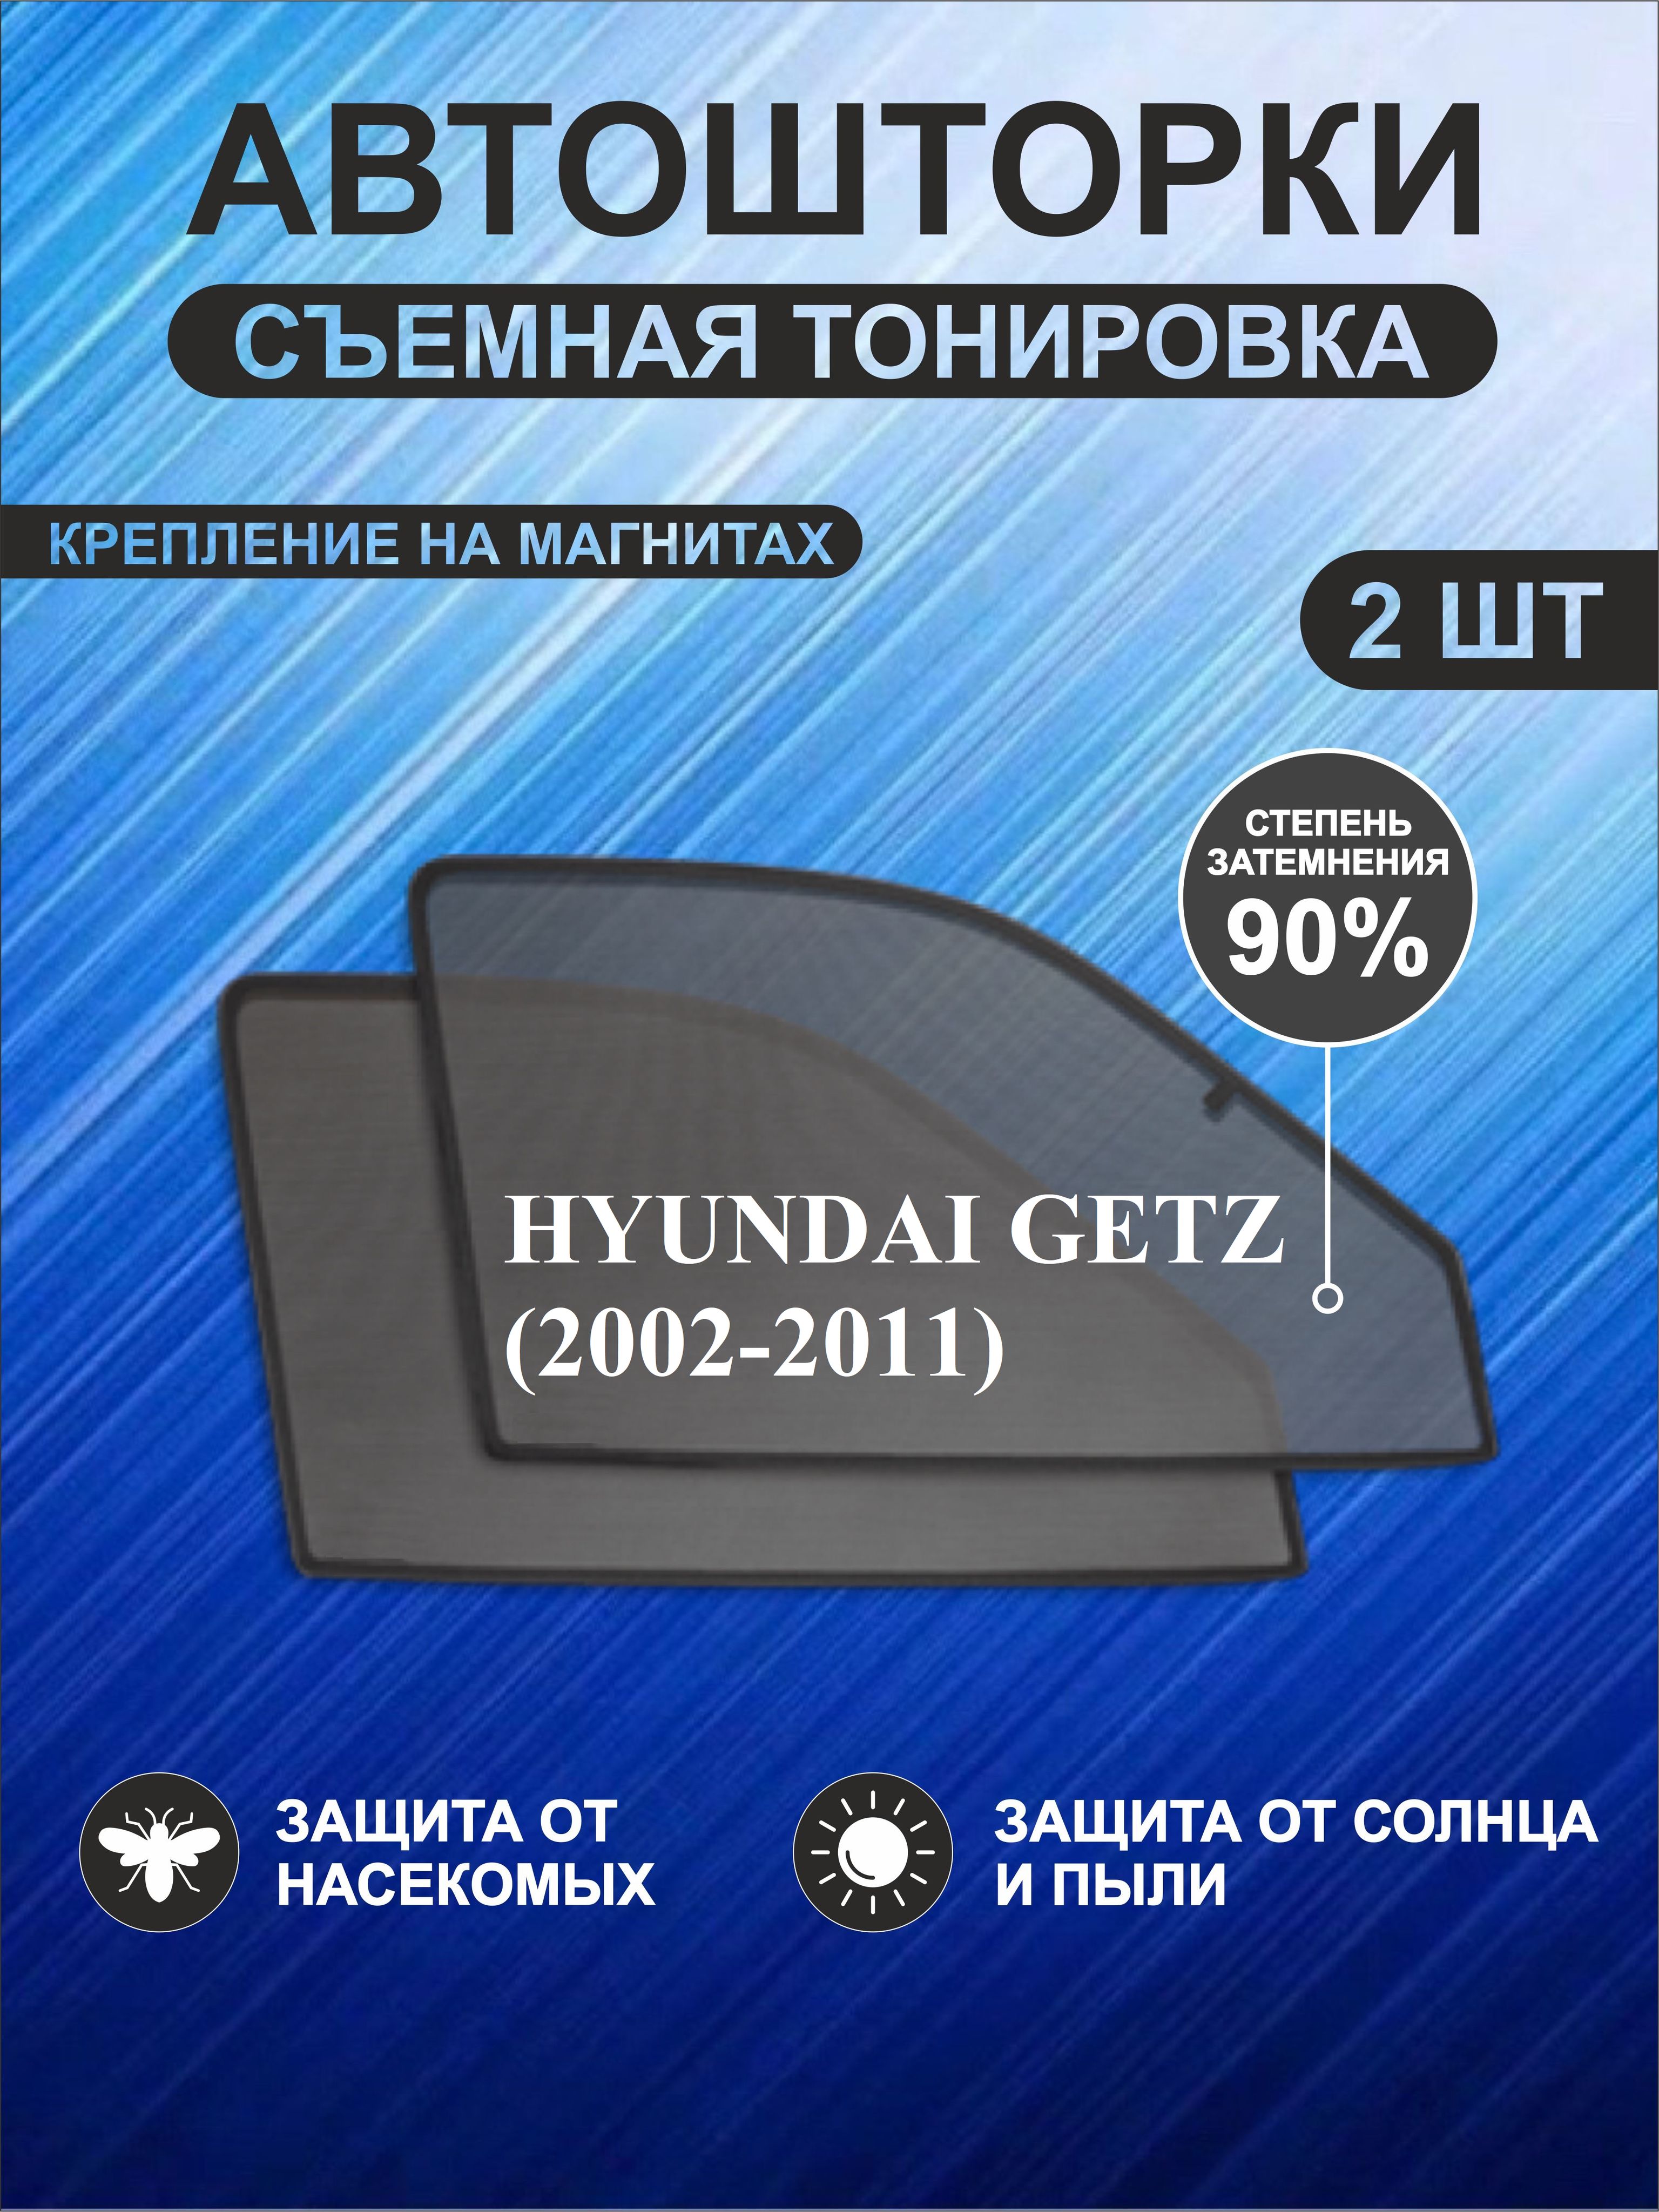 АвтошторкинаHyundaiGetz(2002-2011)